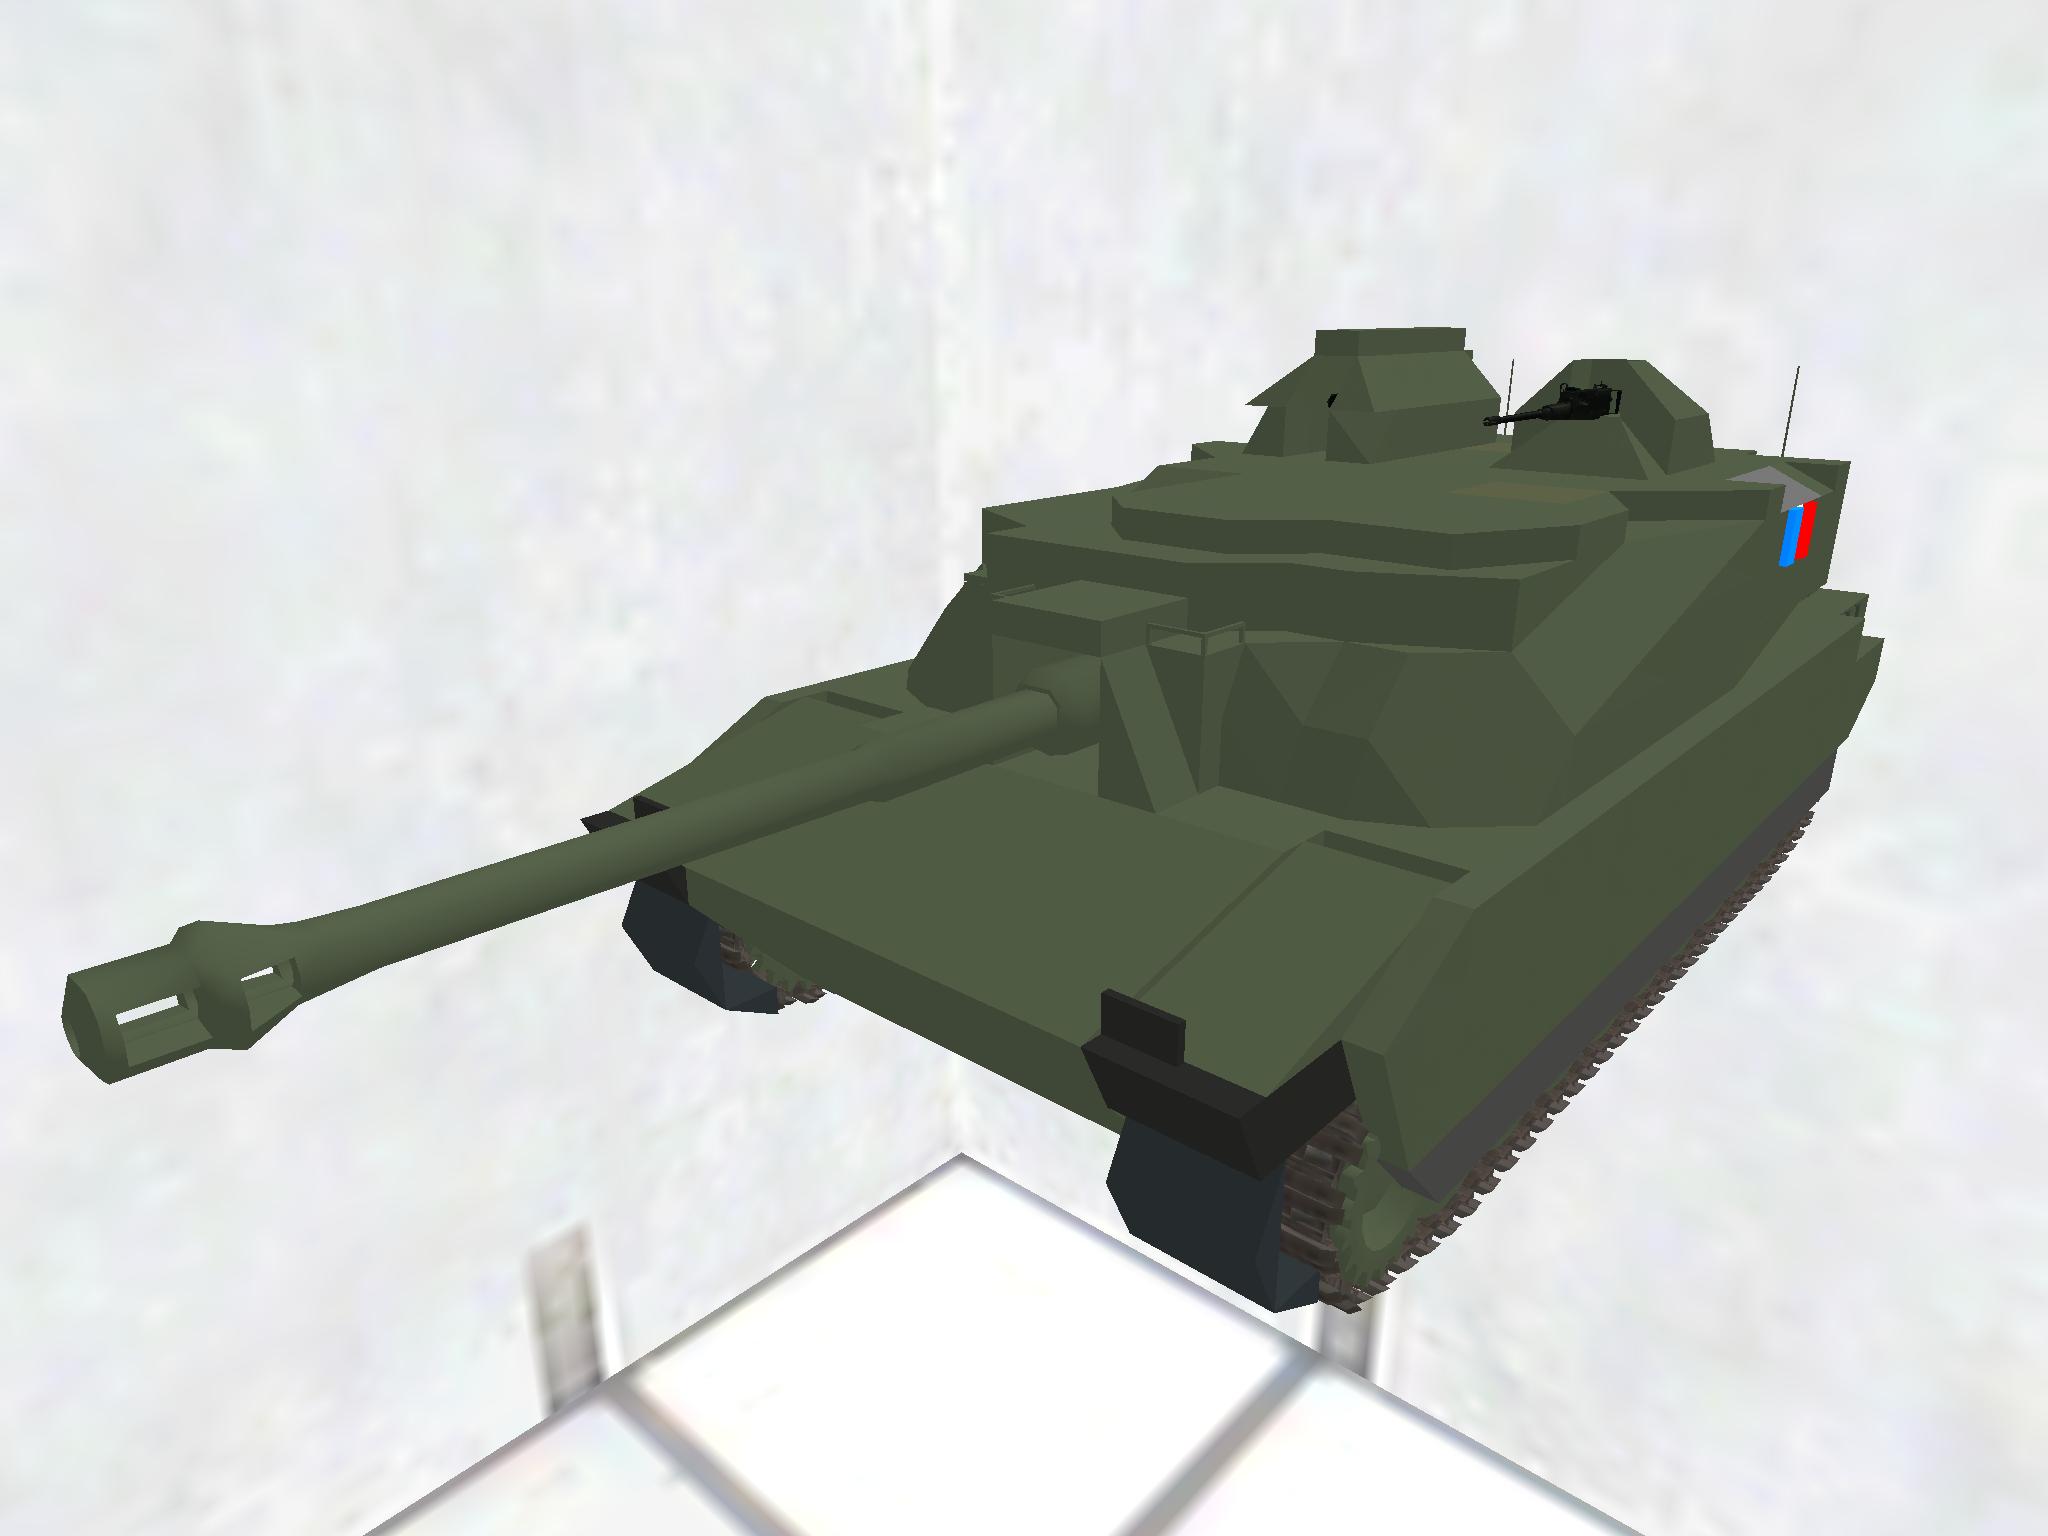 AMX-56 Leclerc